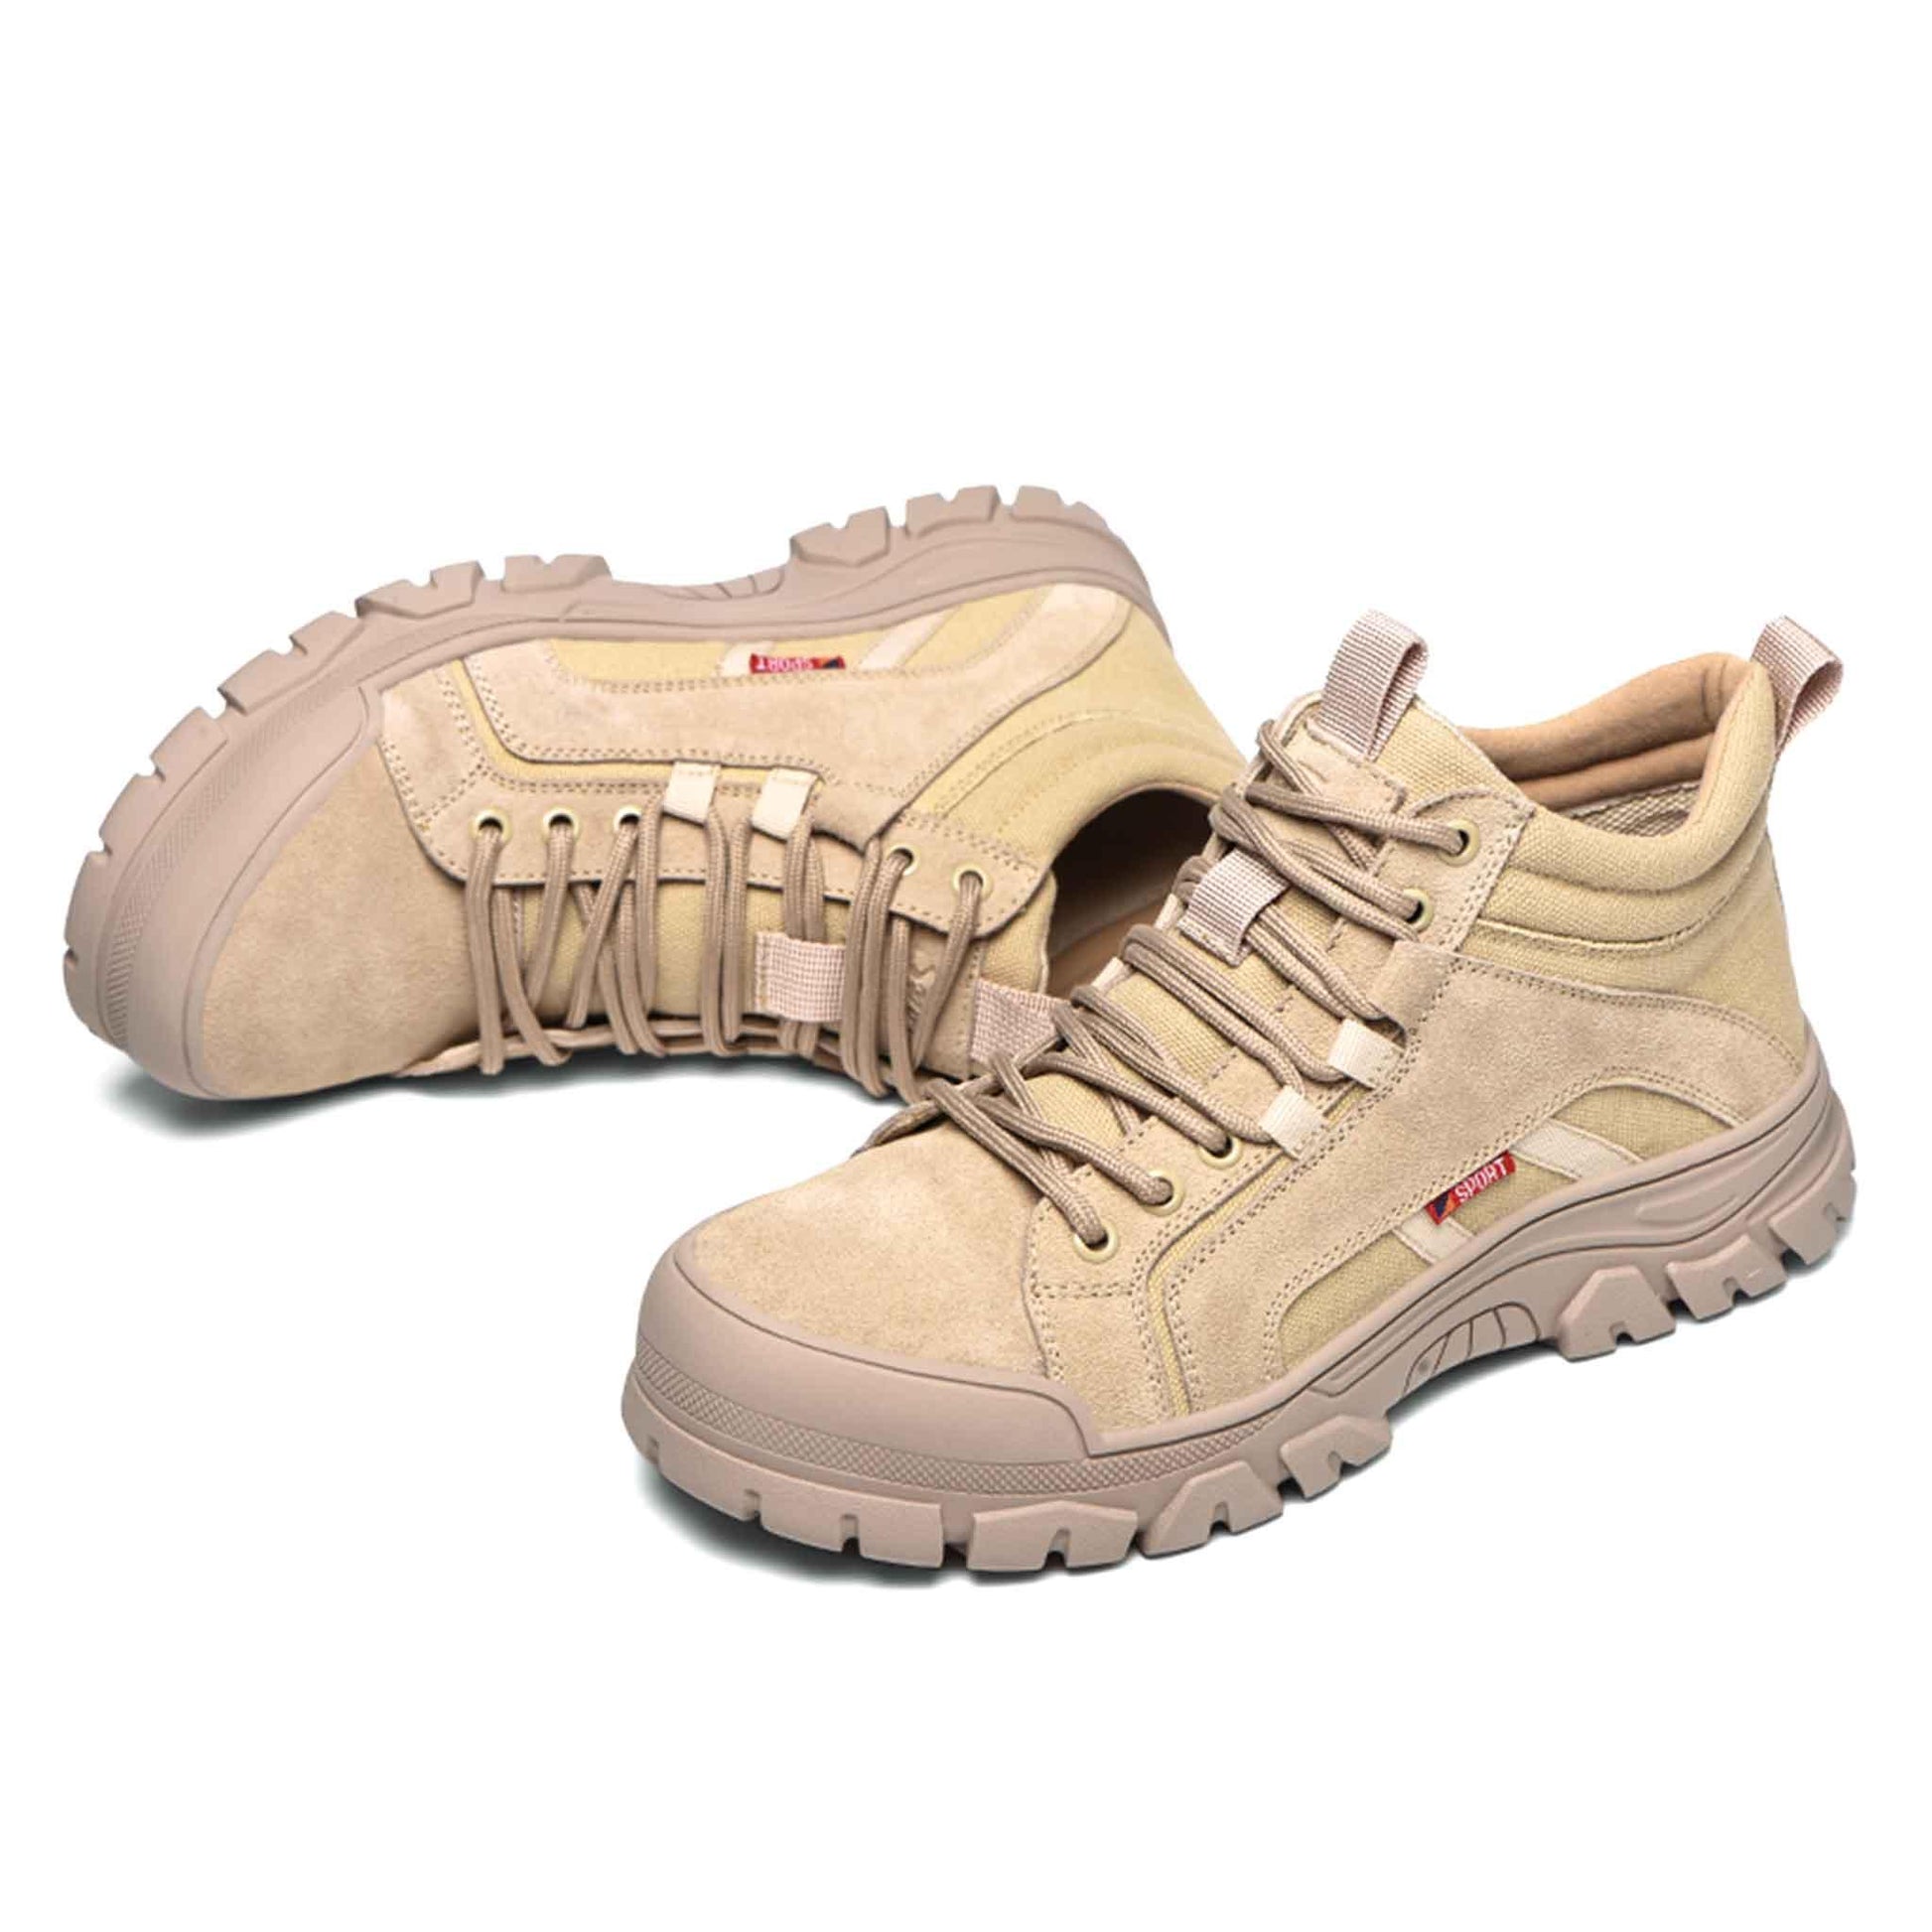 Women's Steel Toe Boots - Lightweight | B181 - USINE PRO Footwear